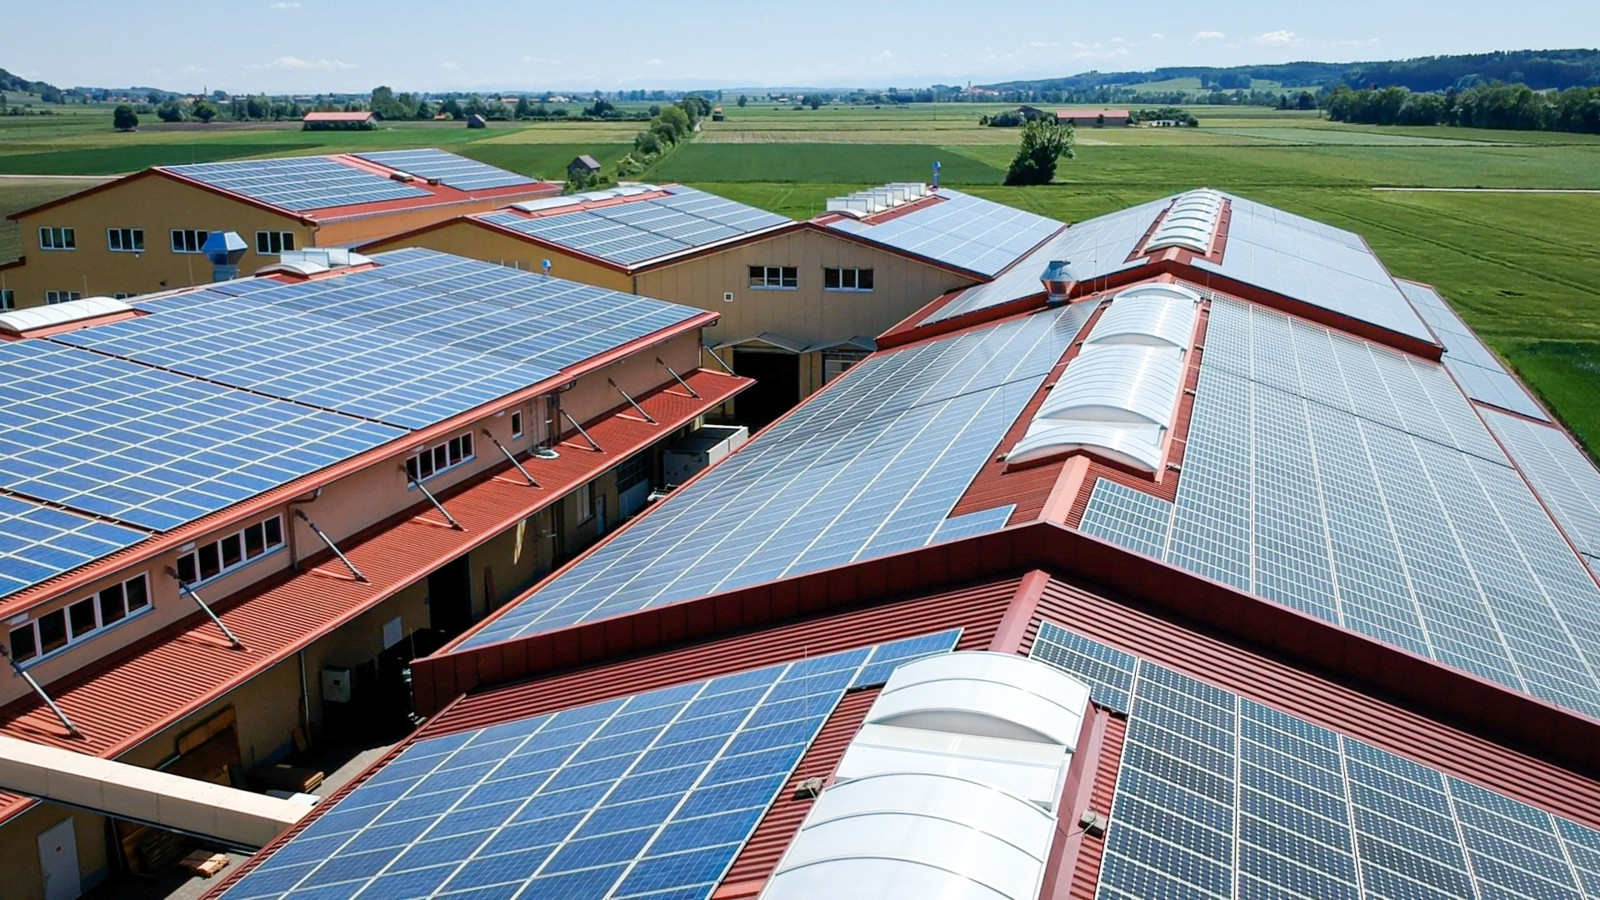 Photovoltaikanlage bei Ruf: Am Stammsitz in Zaisertshofen hat das Unternehmen auf einer Fläche von 10.732 m² 7.320 Photovoltaikmodule mit einer Modulleistung von 1692,4 kWp installiert. 